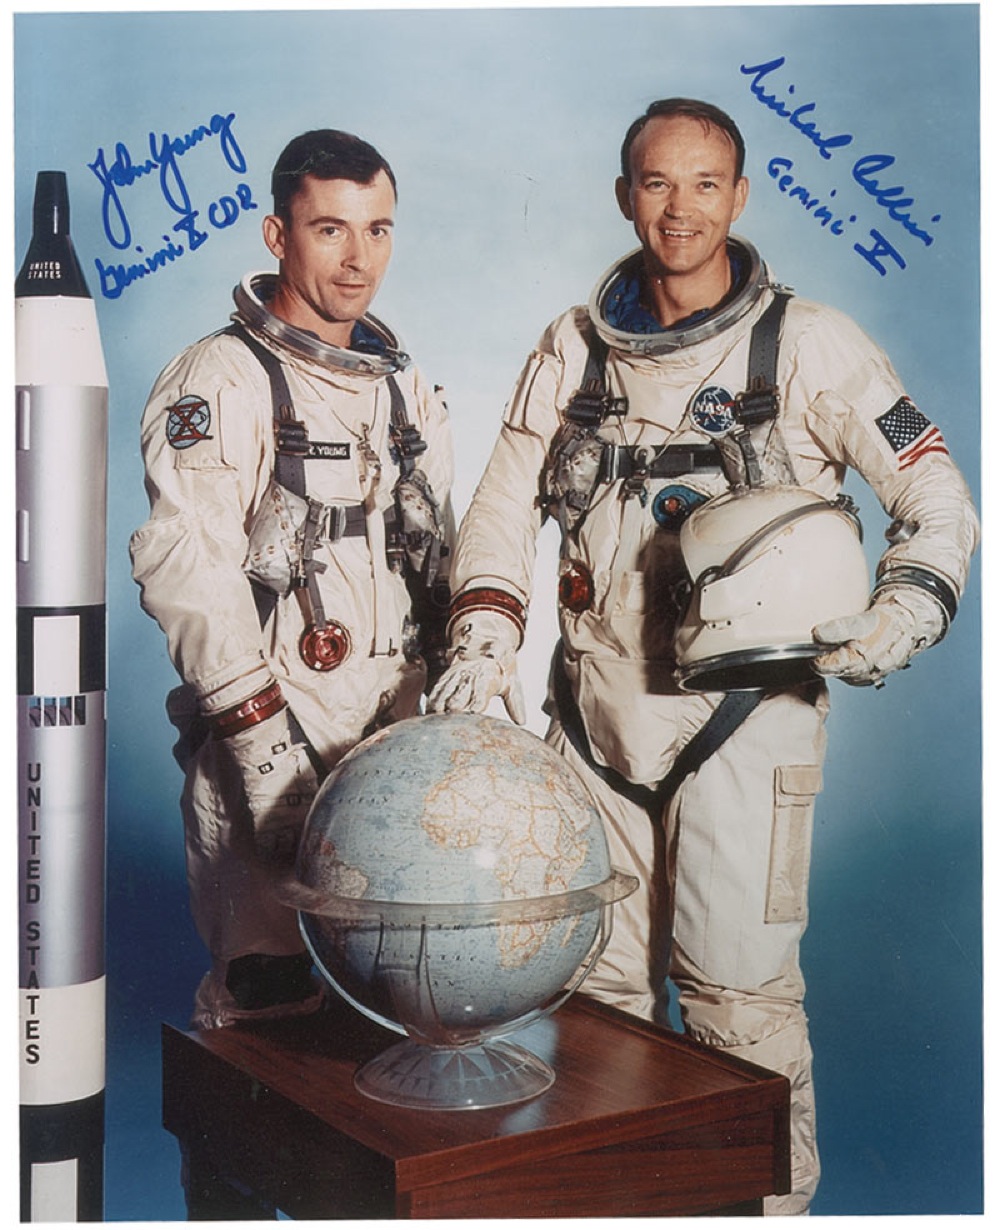 Lot #536 Gemini 10